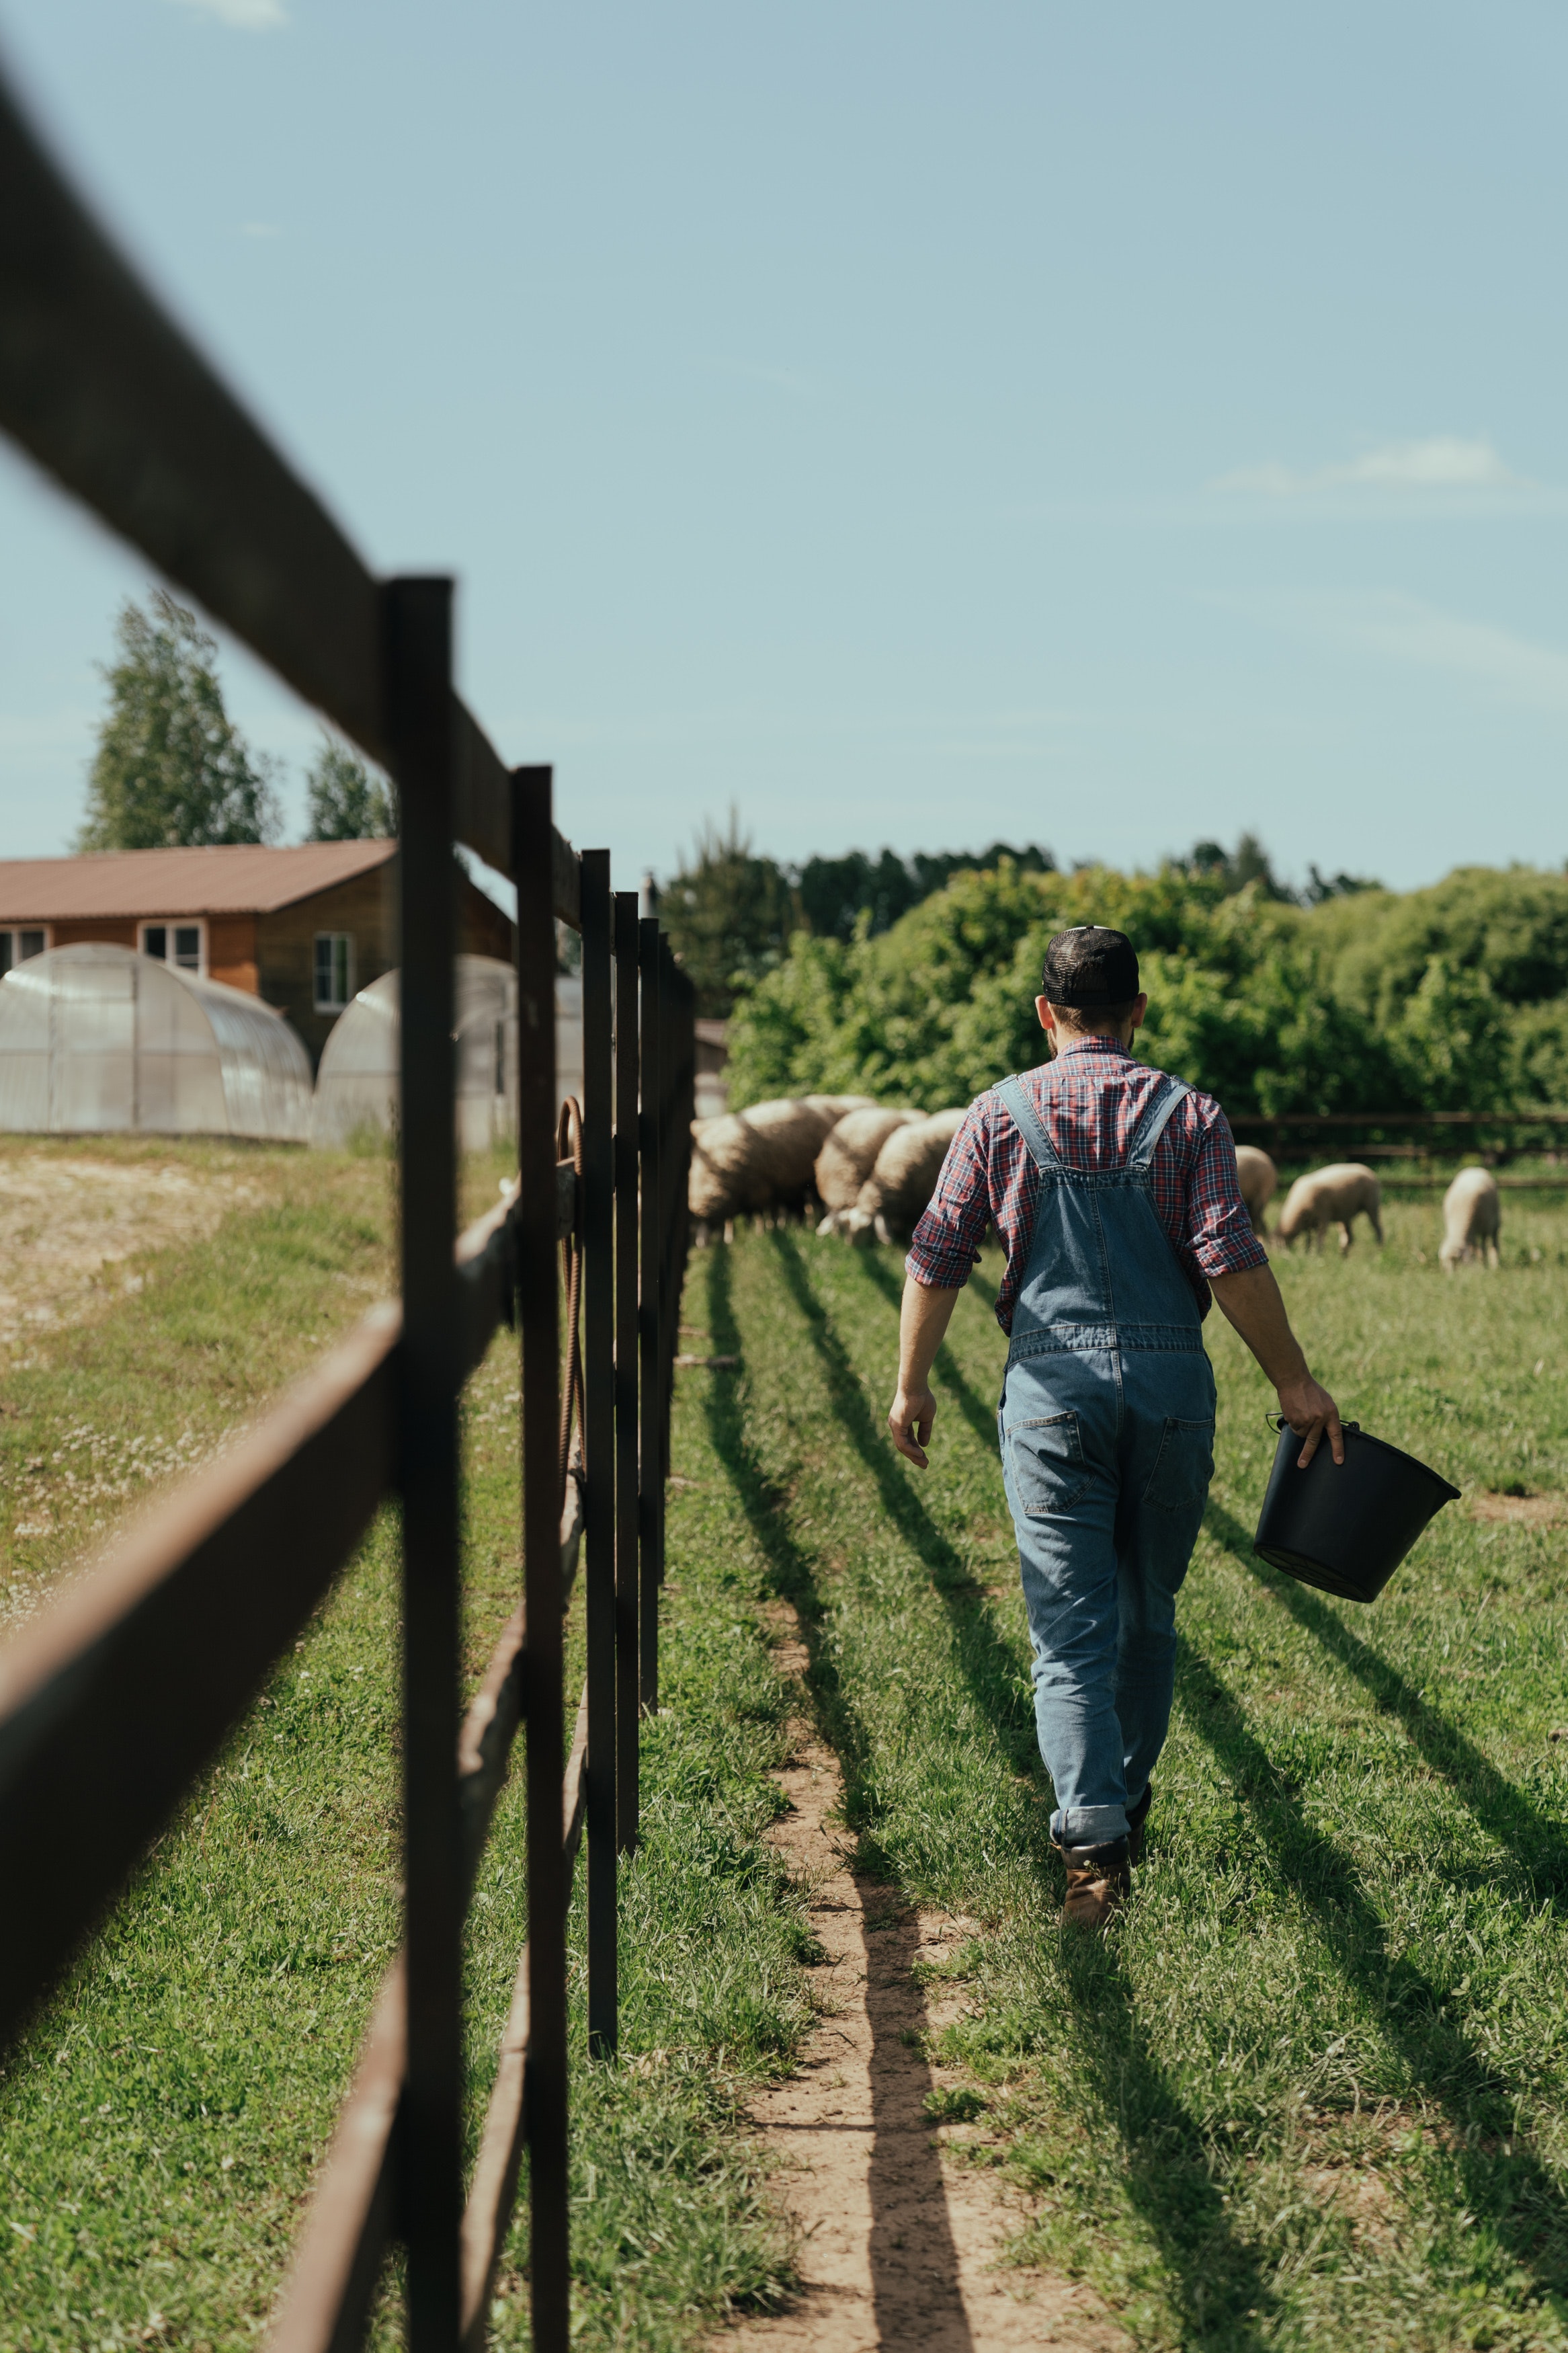 Страничка фермера - передовой опыт по ведению хозяйства